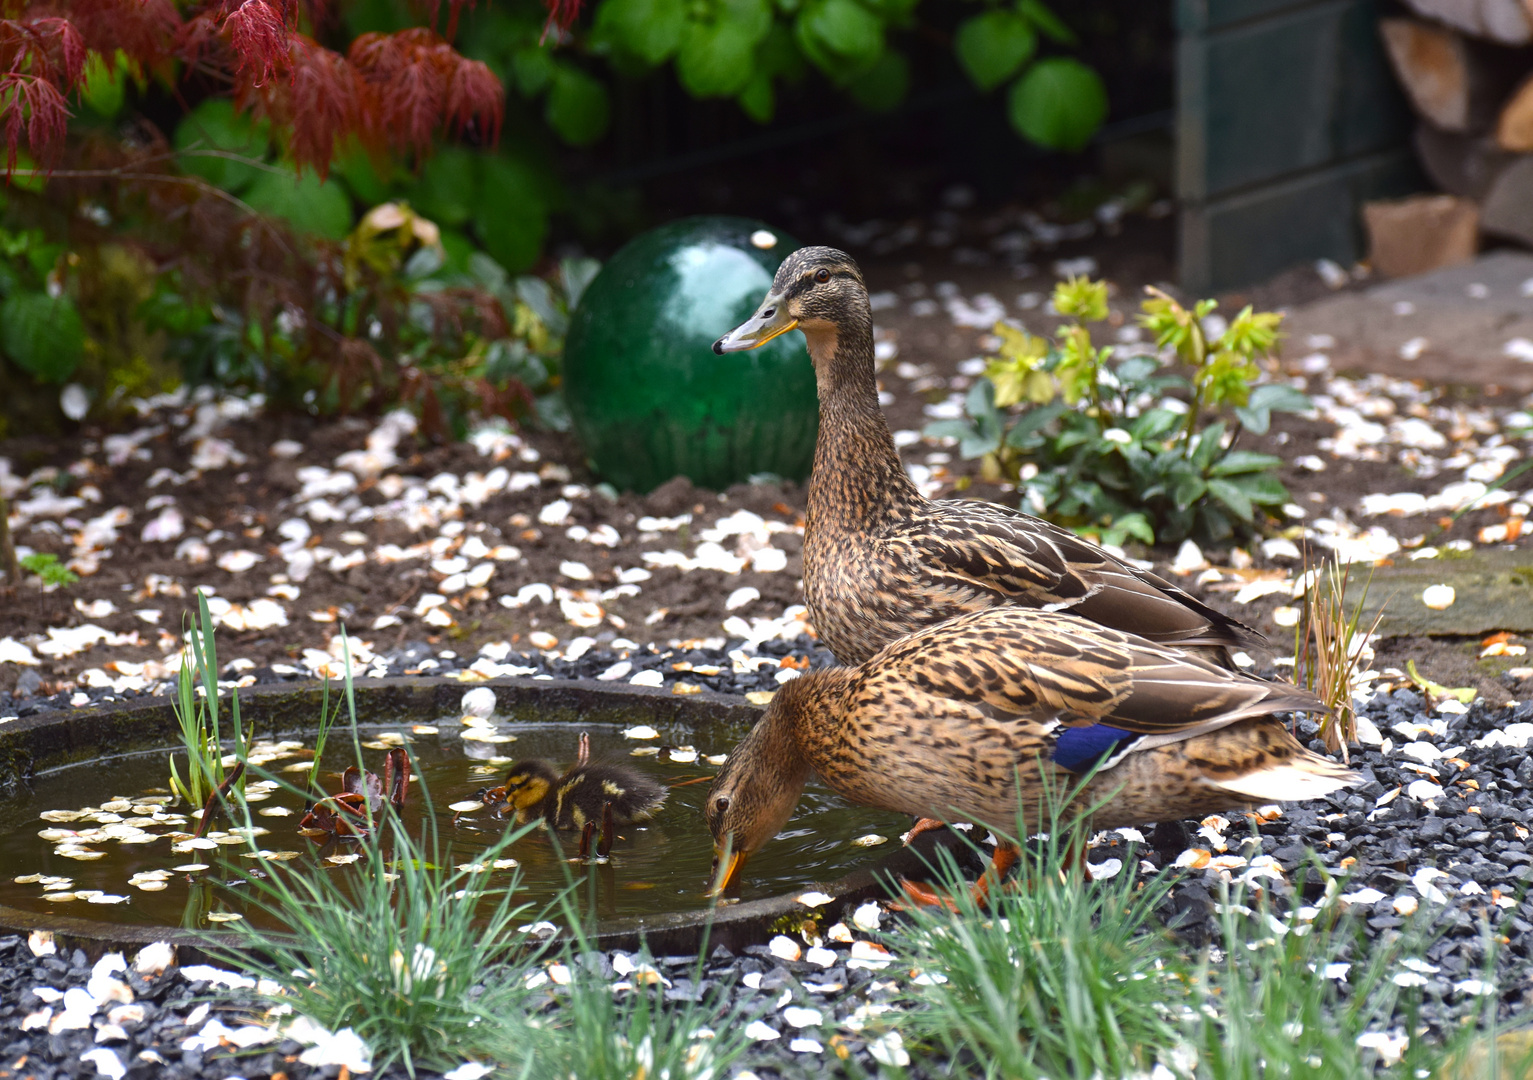 Heute hatten wir Entenbesuch im Garten!